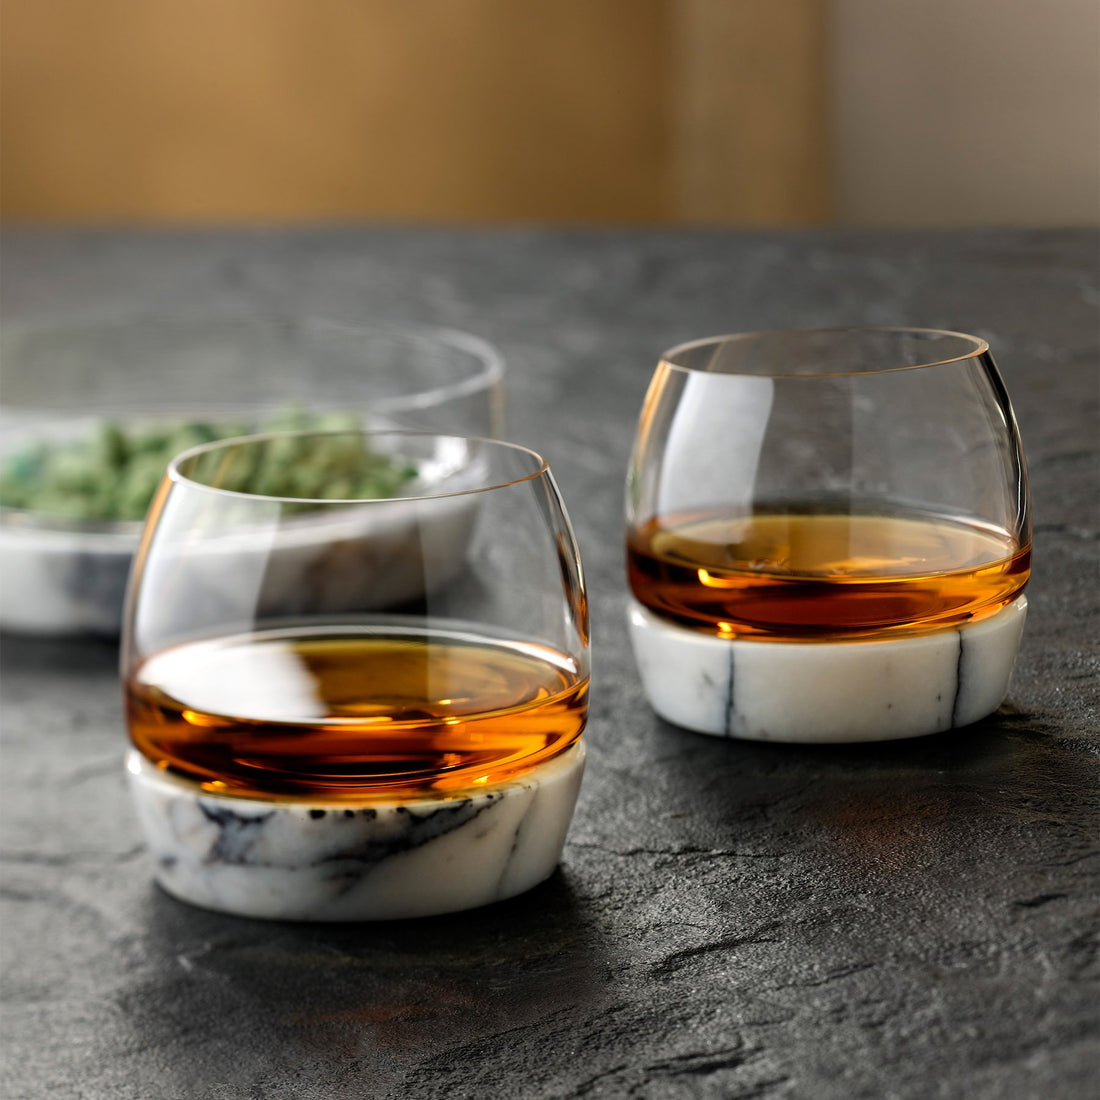 Bicchiere da whisky chill con base in marmo